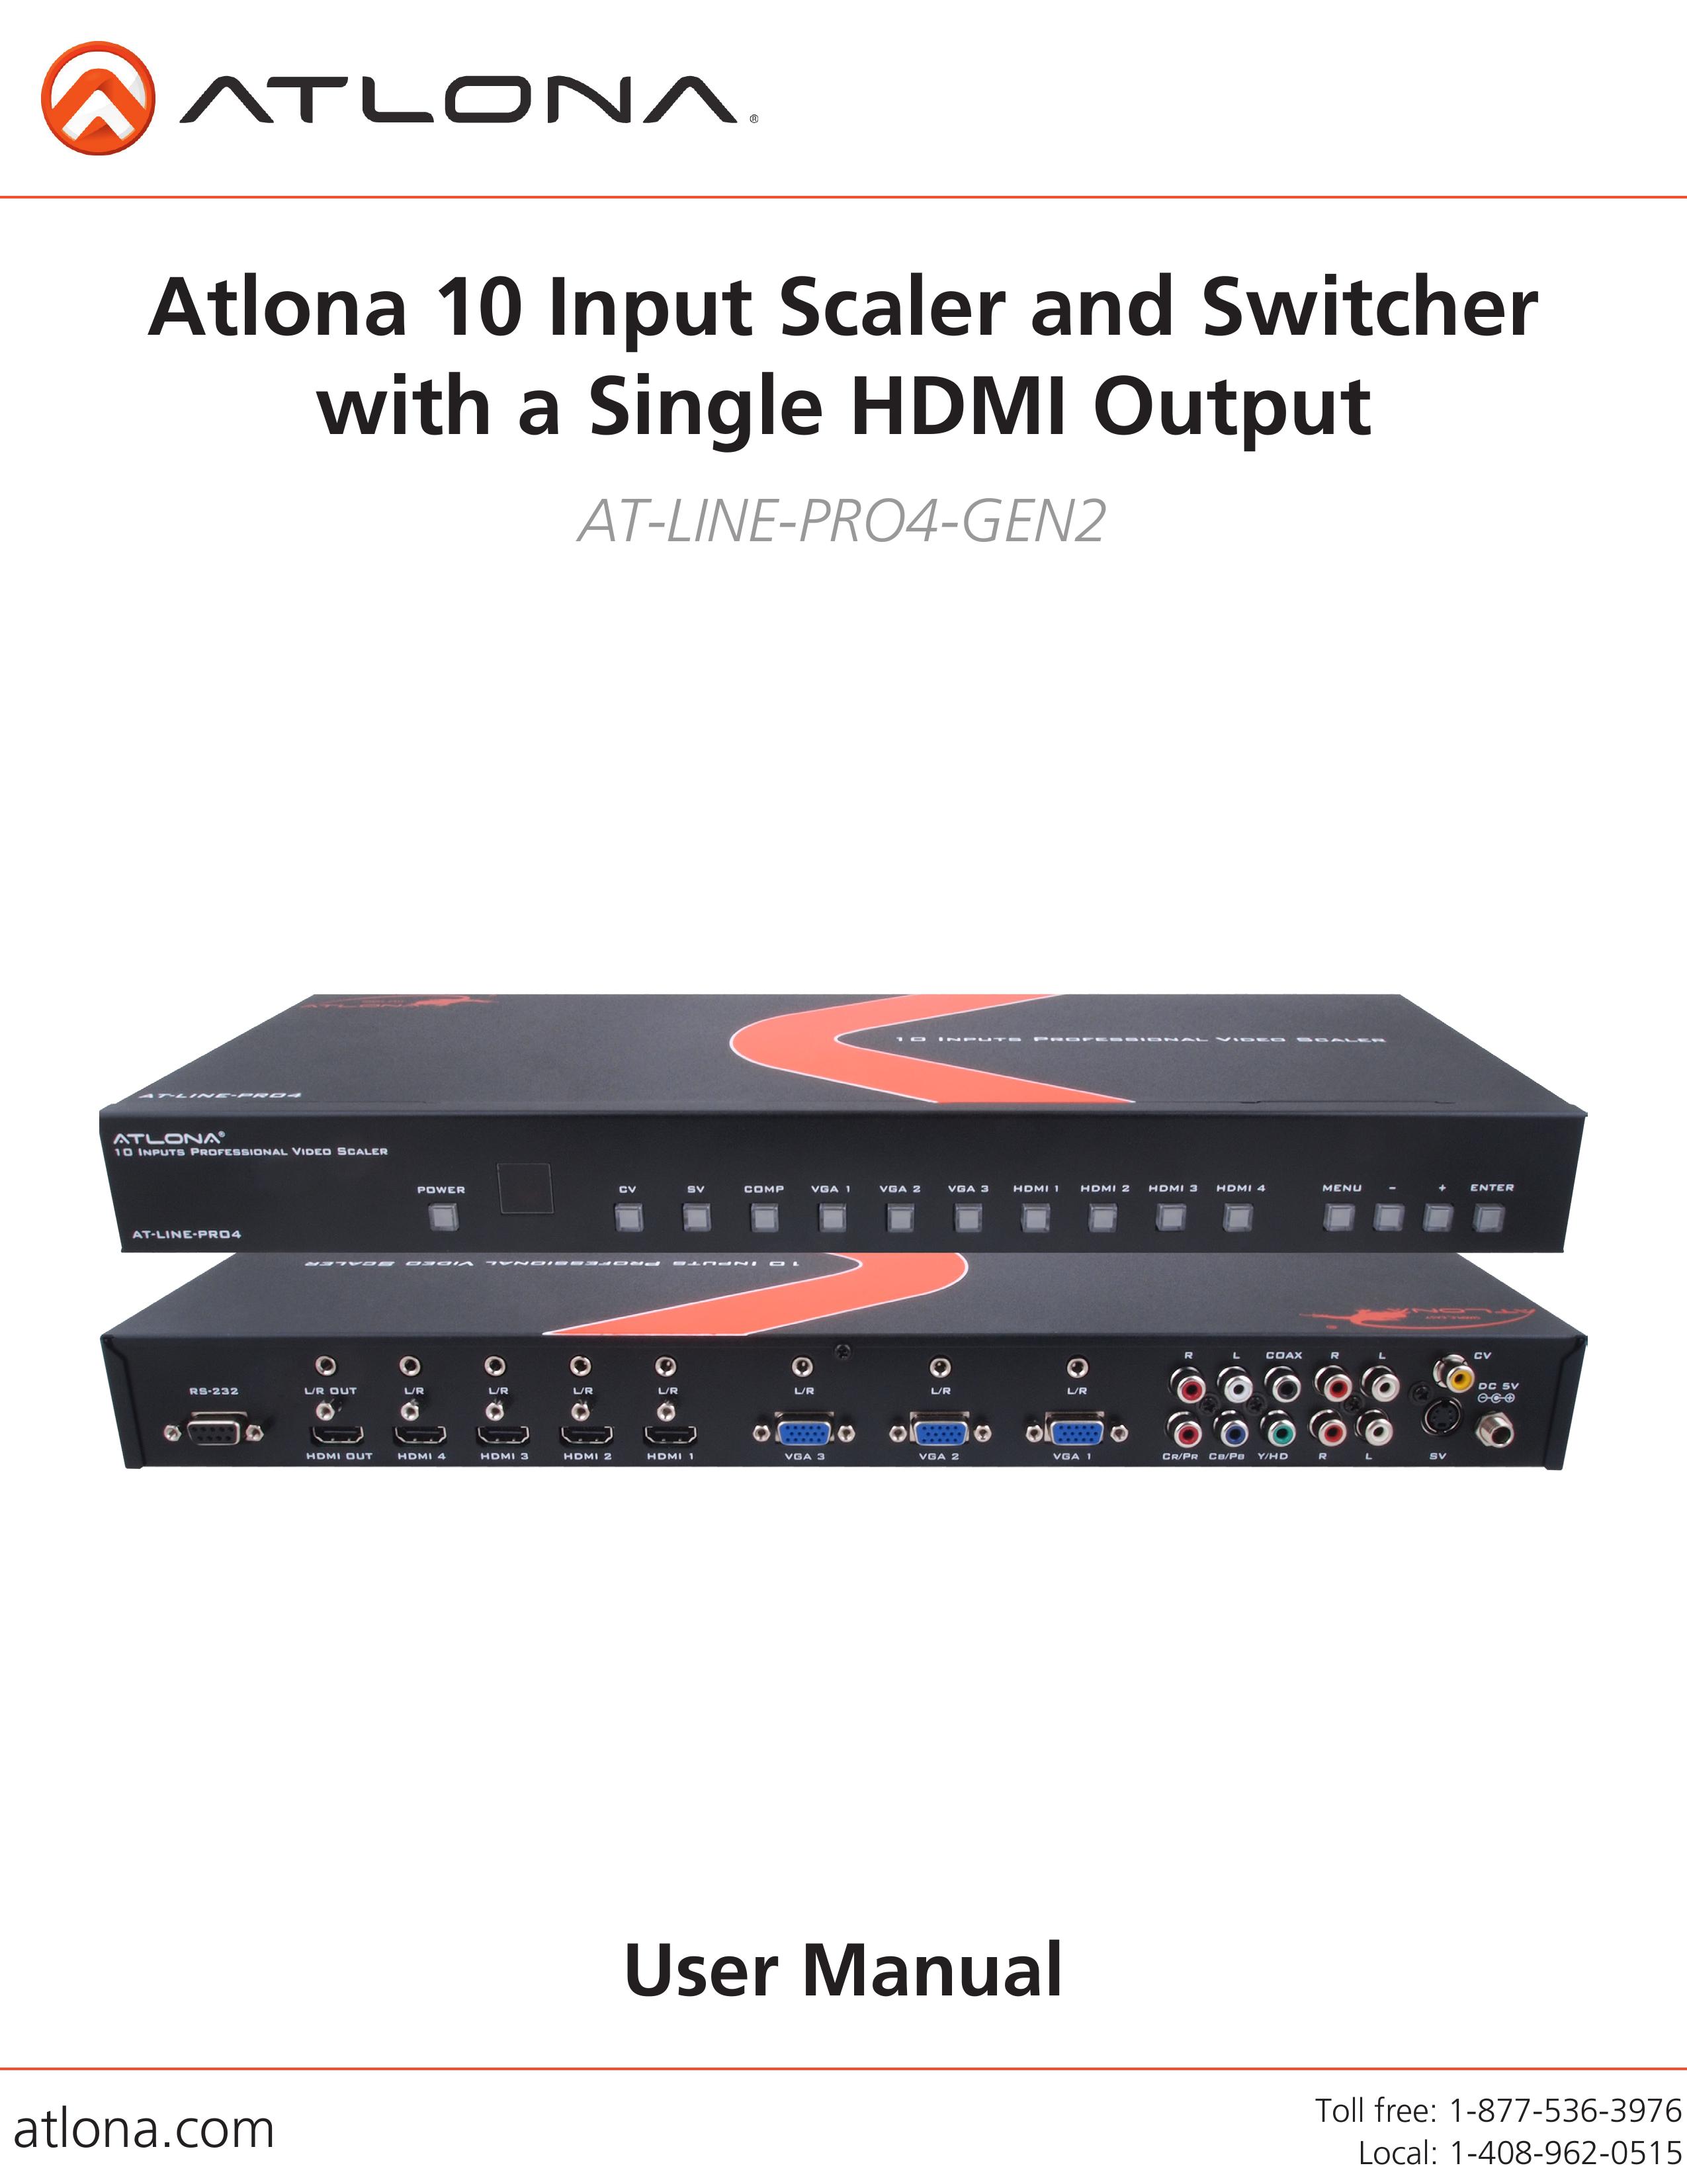 Atlona AT-LINE-PRO4-GEN2 Film Camera User Manual